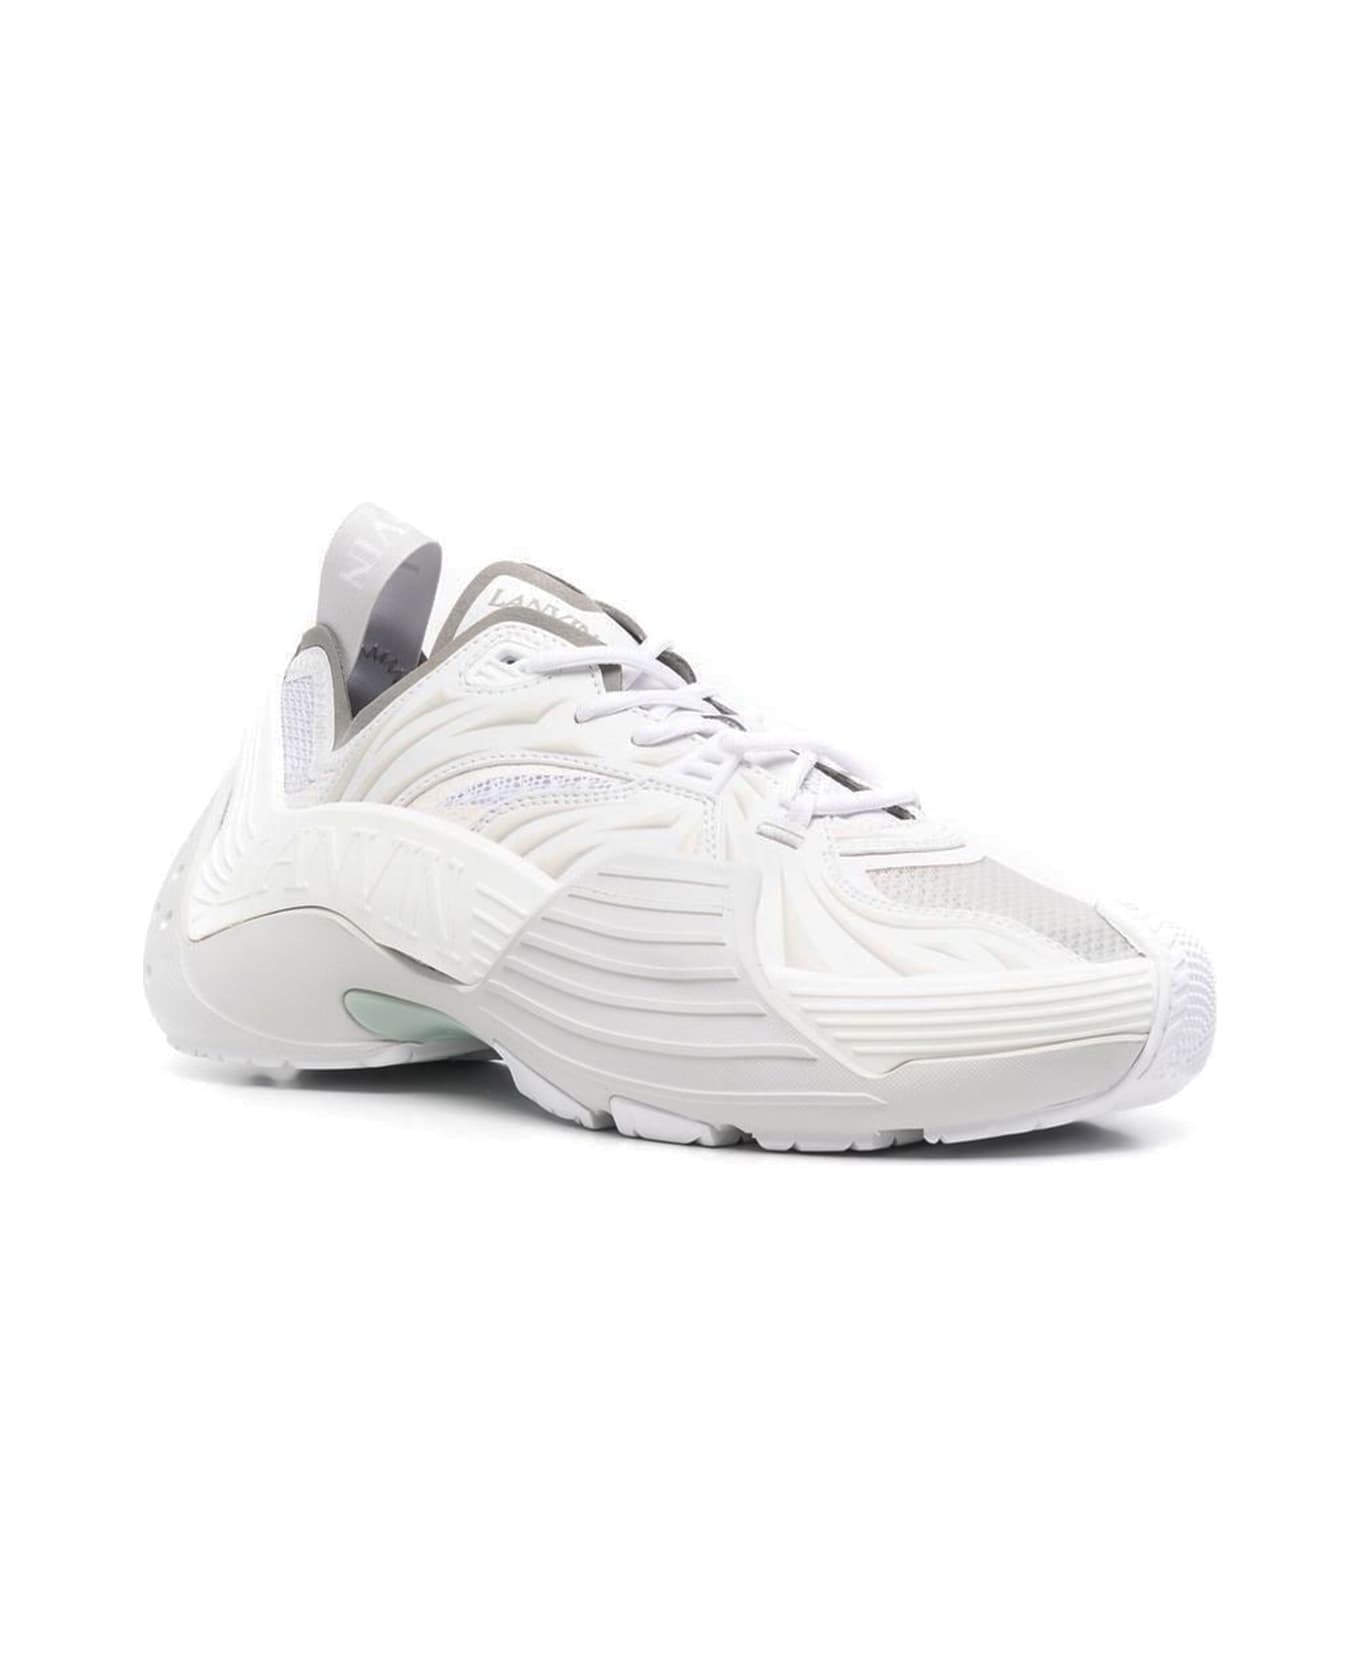 Lanvin White Mesh Flash-x Sneakers - Bianco